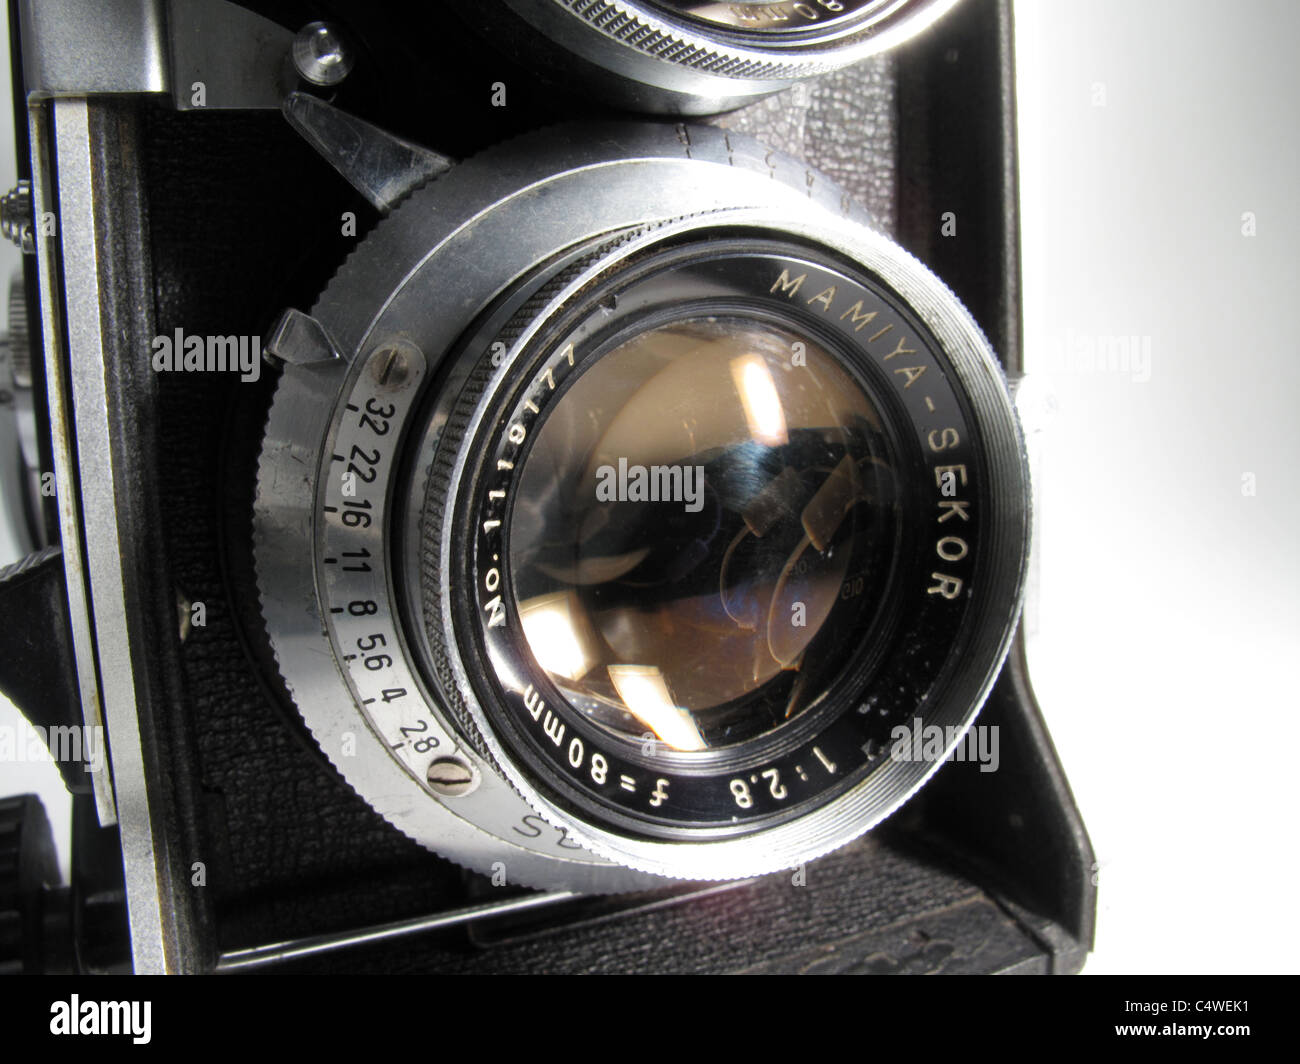 Mamiya C330 Professional film Reflex Camera Base-Kamera viel Gebrauch von Profis in den 80er Jahren Stockfoto